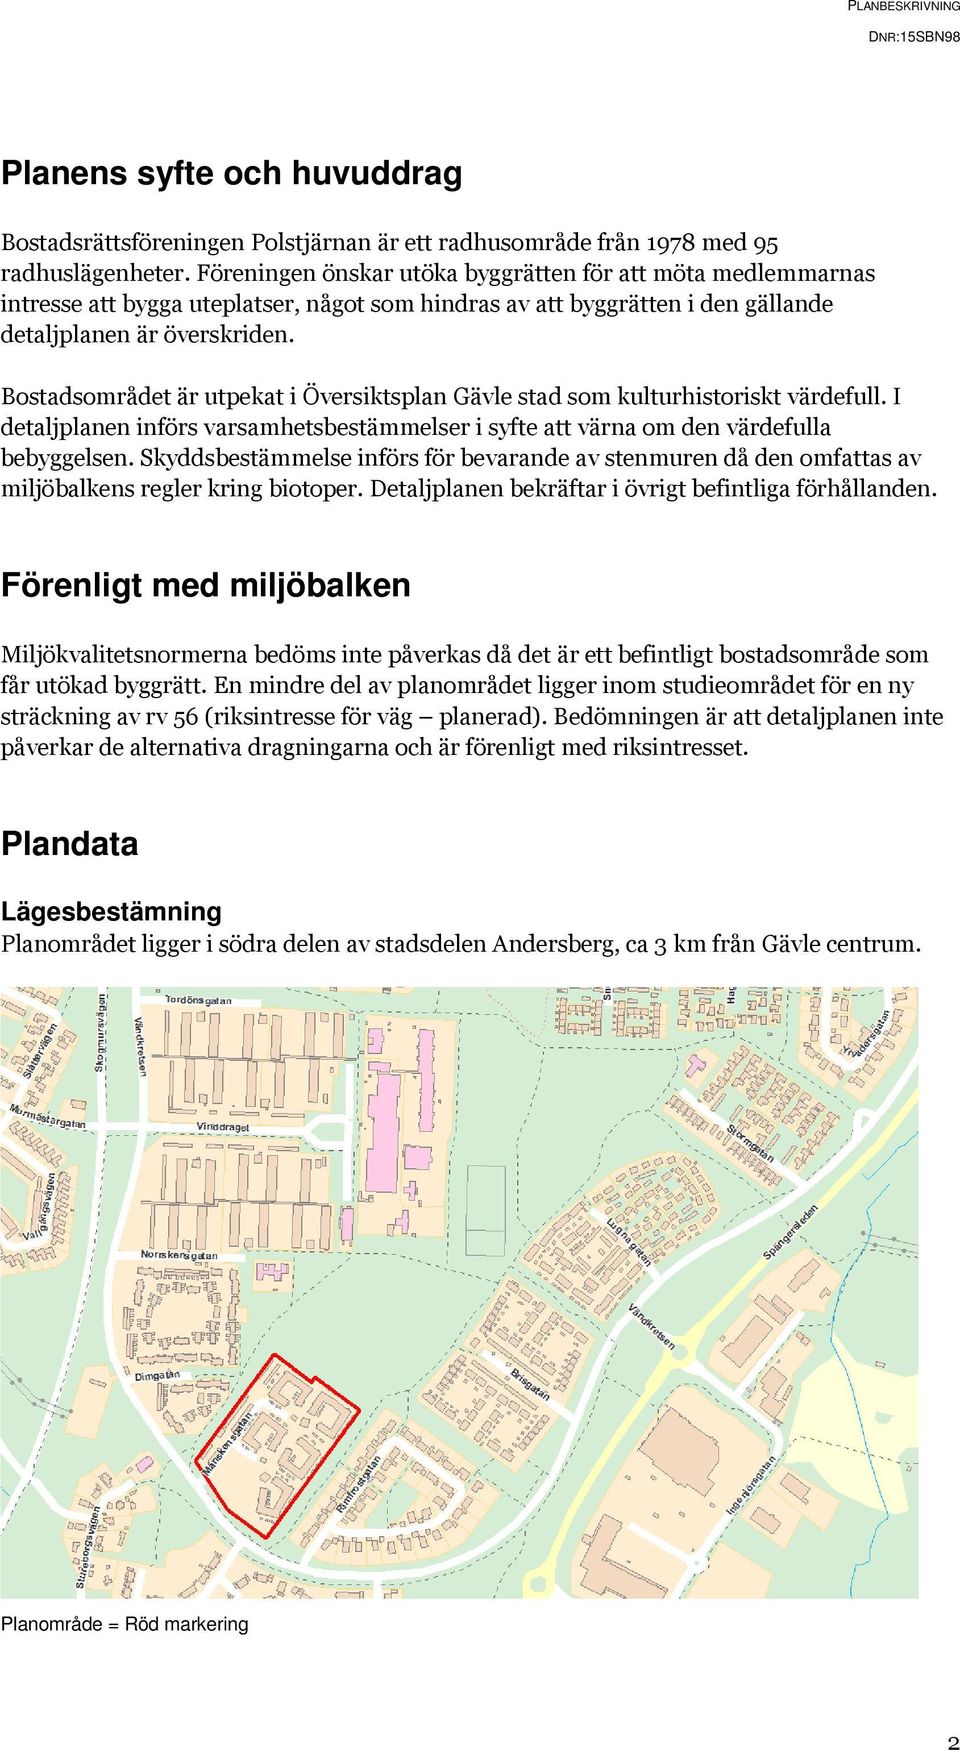 Bostadsområdet är utpekat i Översiktsplan Gävle stad som kulturhistoriskt värdefull. I detaljplanen införs varsamhetsbestämmelser i syfte att värna om den värdefulla bebyggelsen.